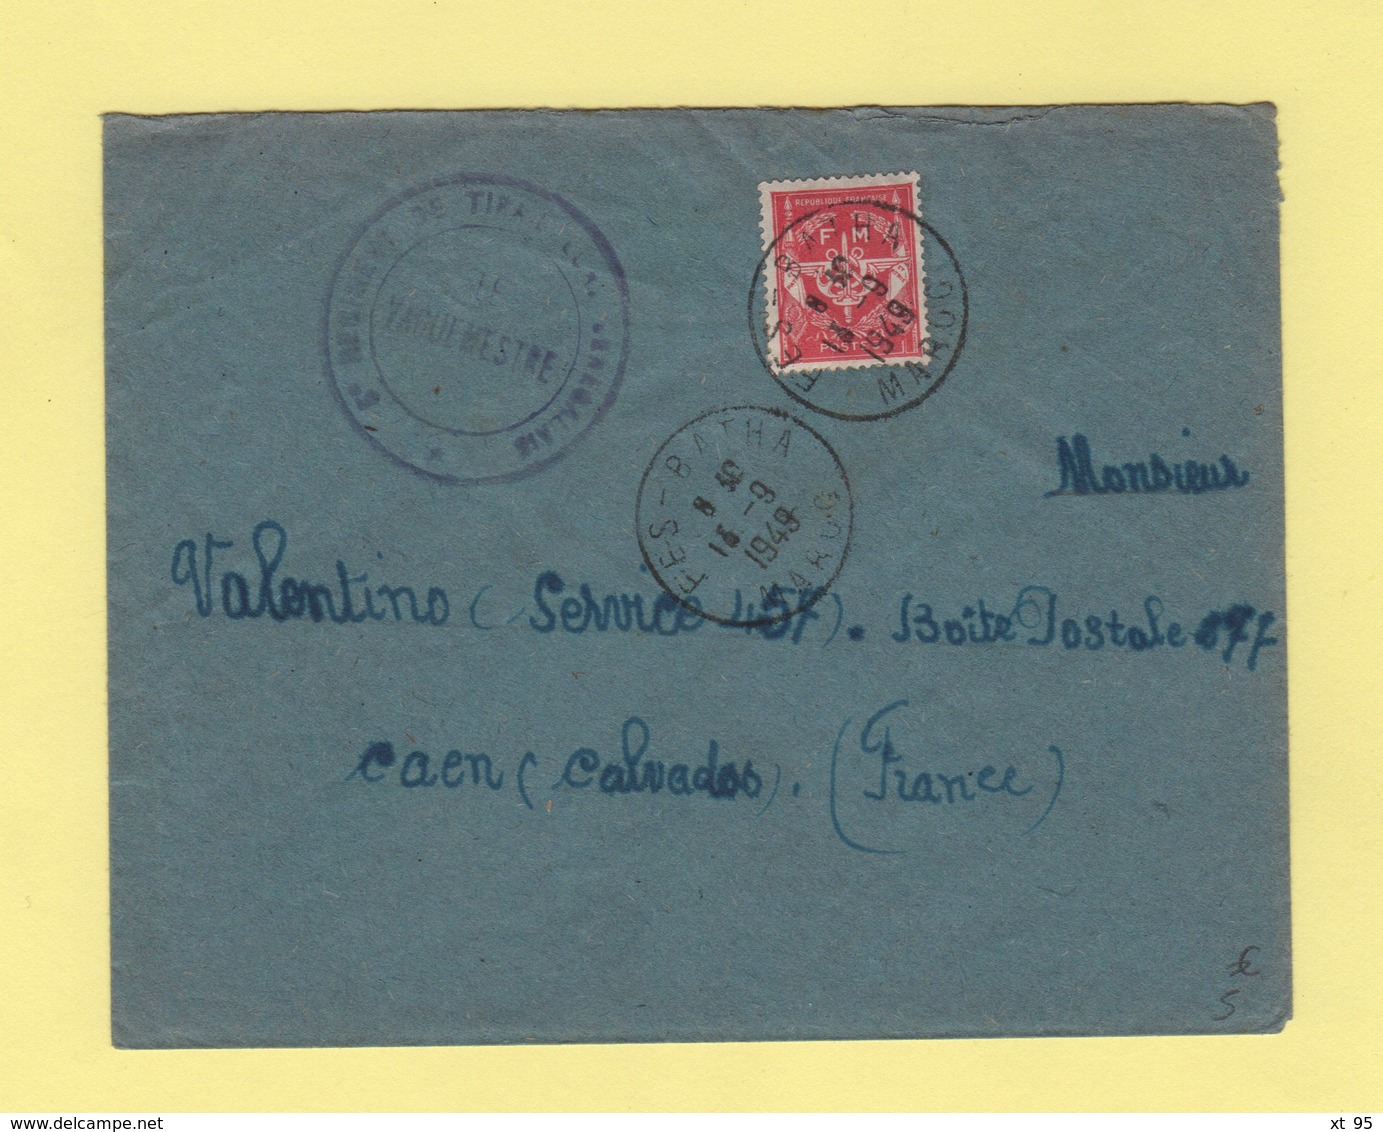 Timbre FM - Fes Batha - Maroc - 1949 - 5e Regiment De Tirailleurs Senegalais - Military Postage Stamps